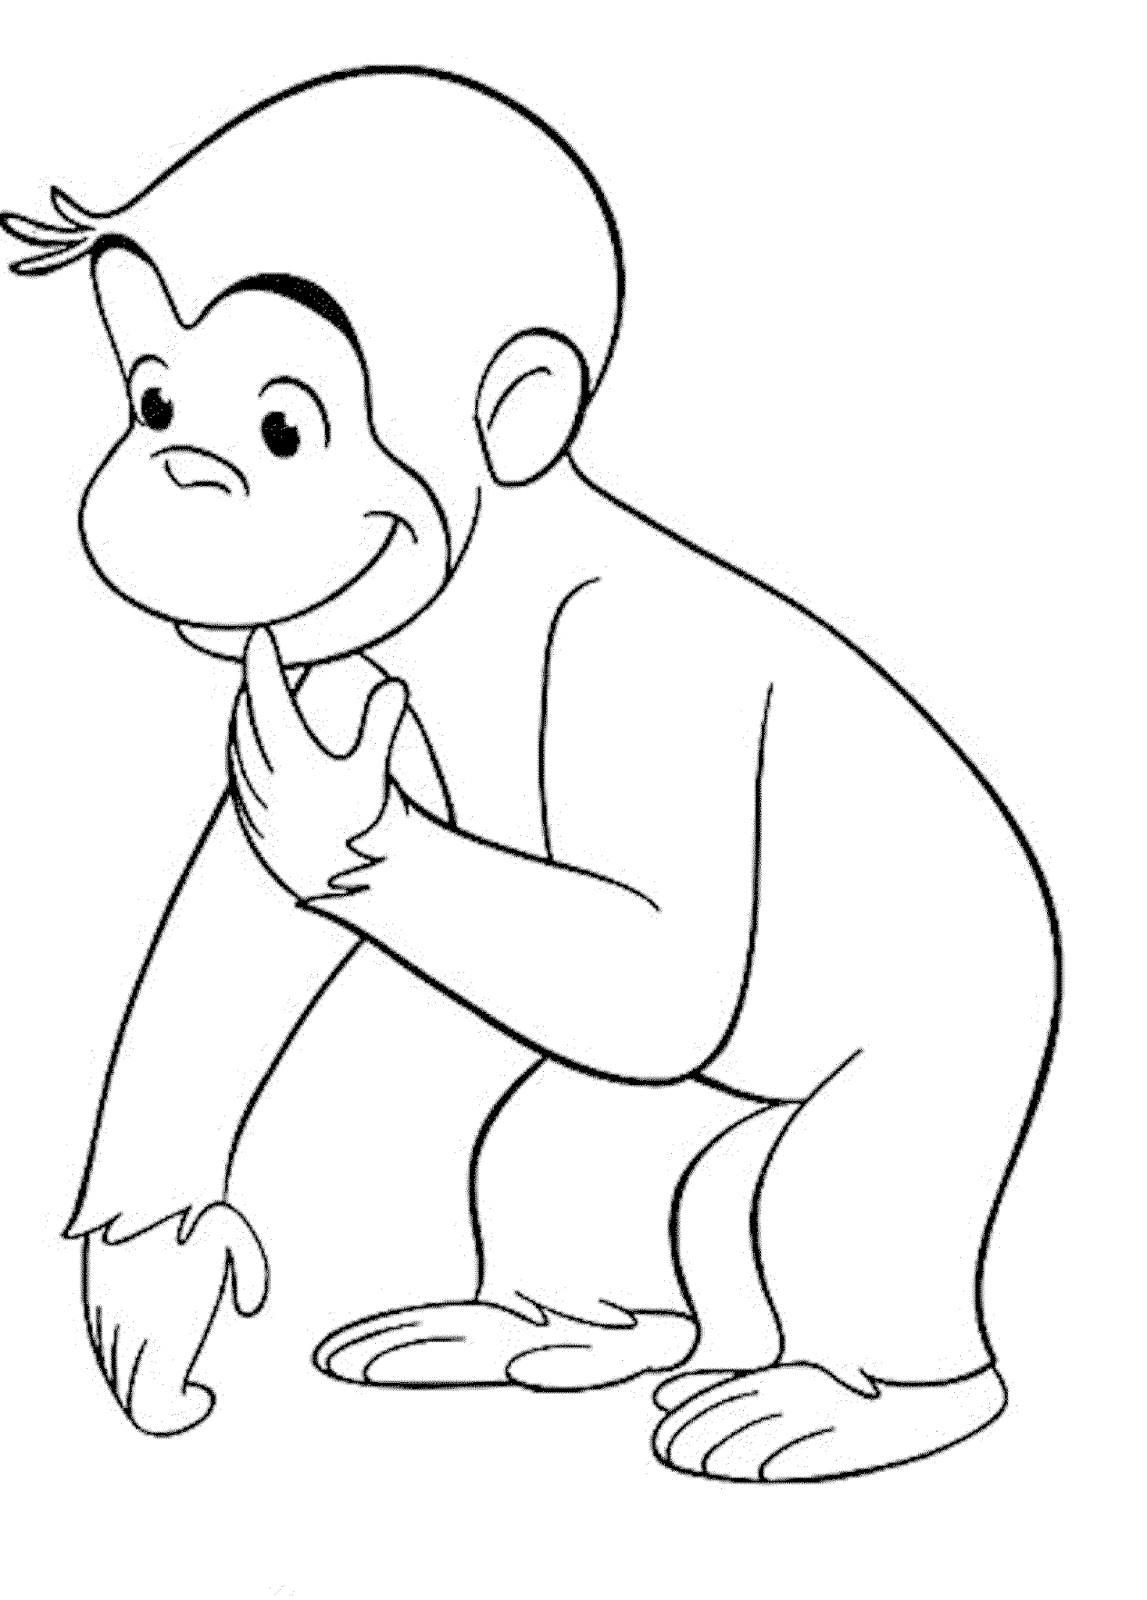 Mewarnai Gambar Tokoh Kartun Curious George Si Monyet Yang Lucu